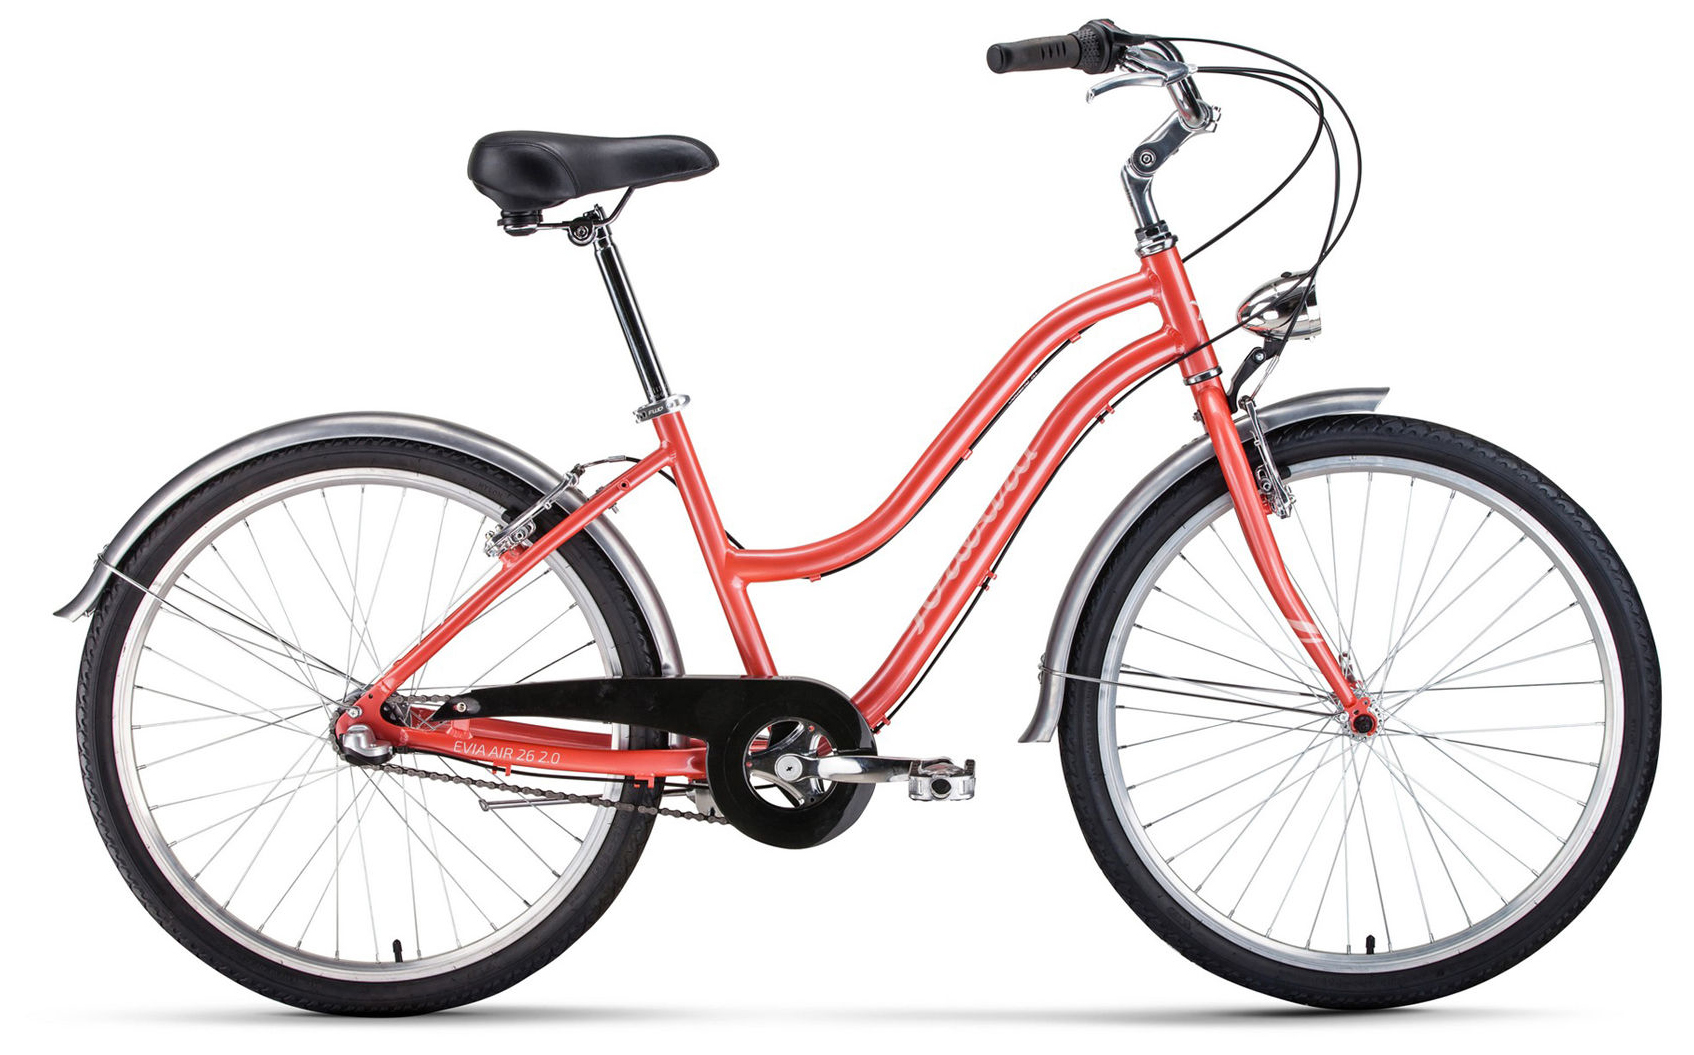  Отзывы о Женском велосипеде Forward Evia Air 26 2.0 2020